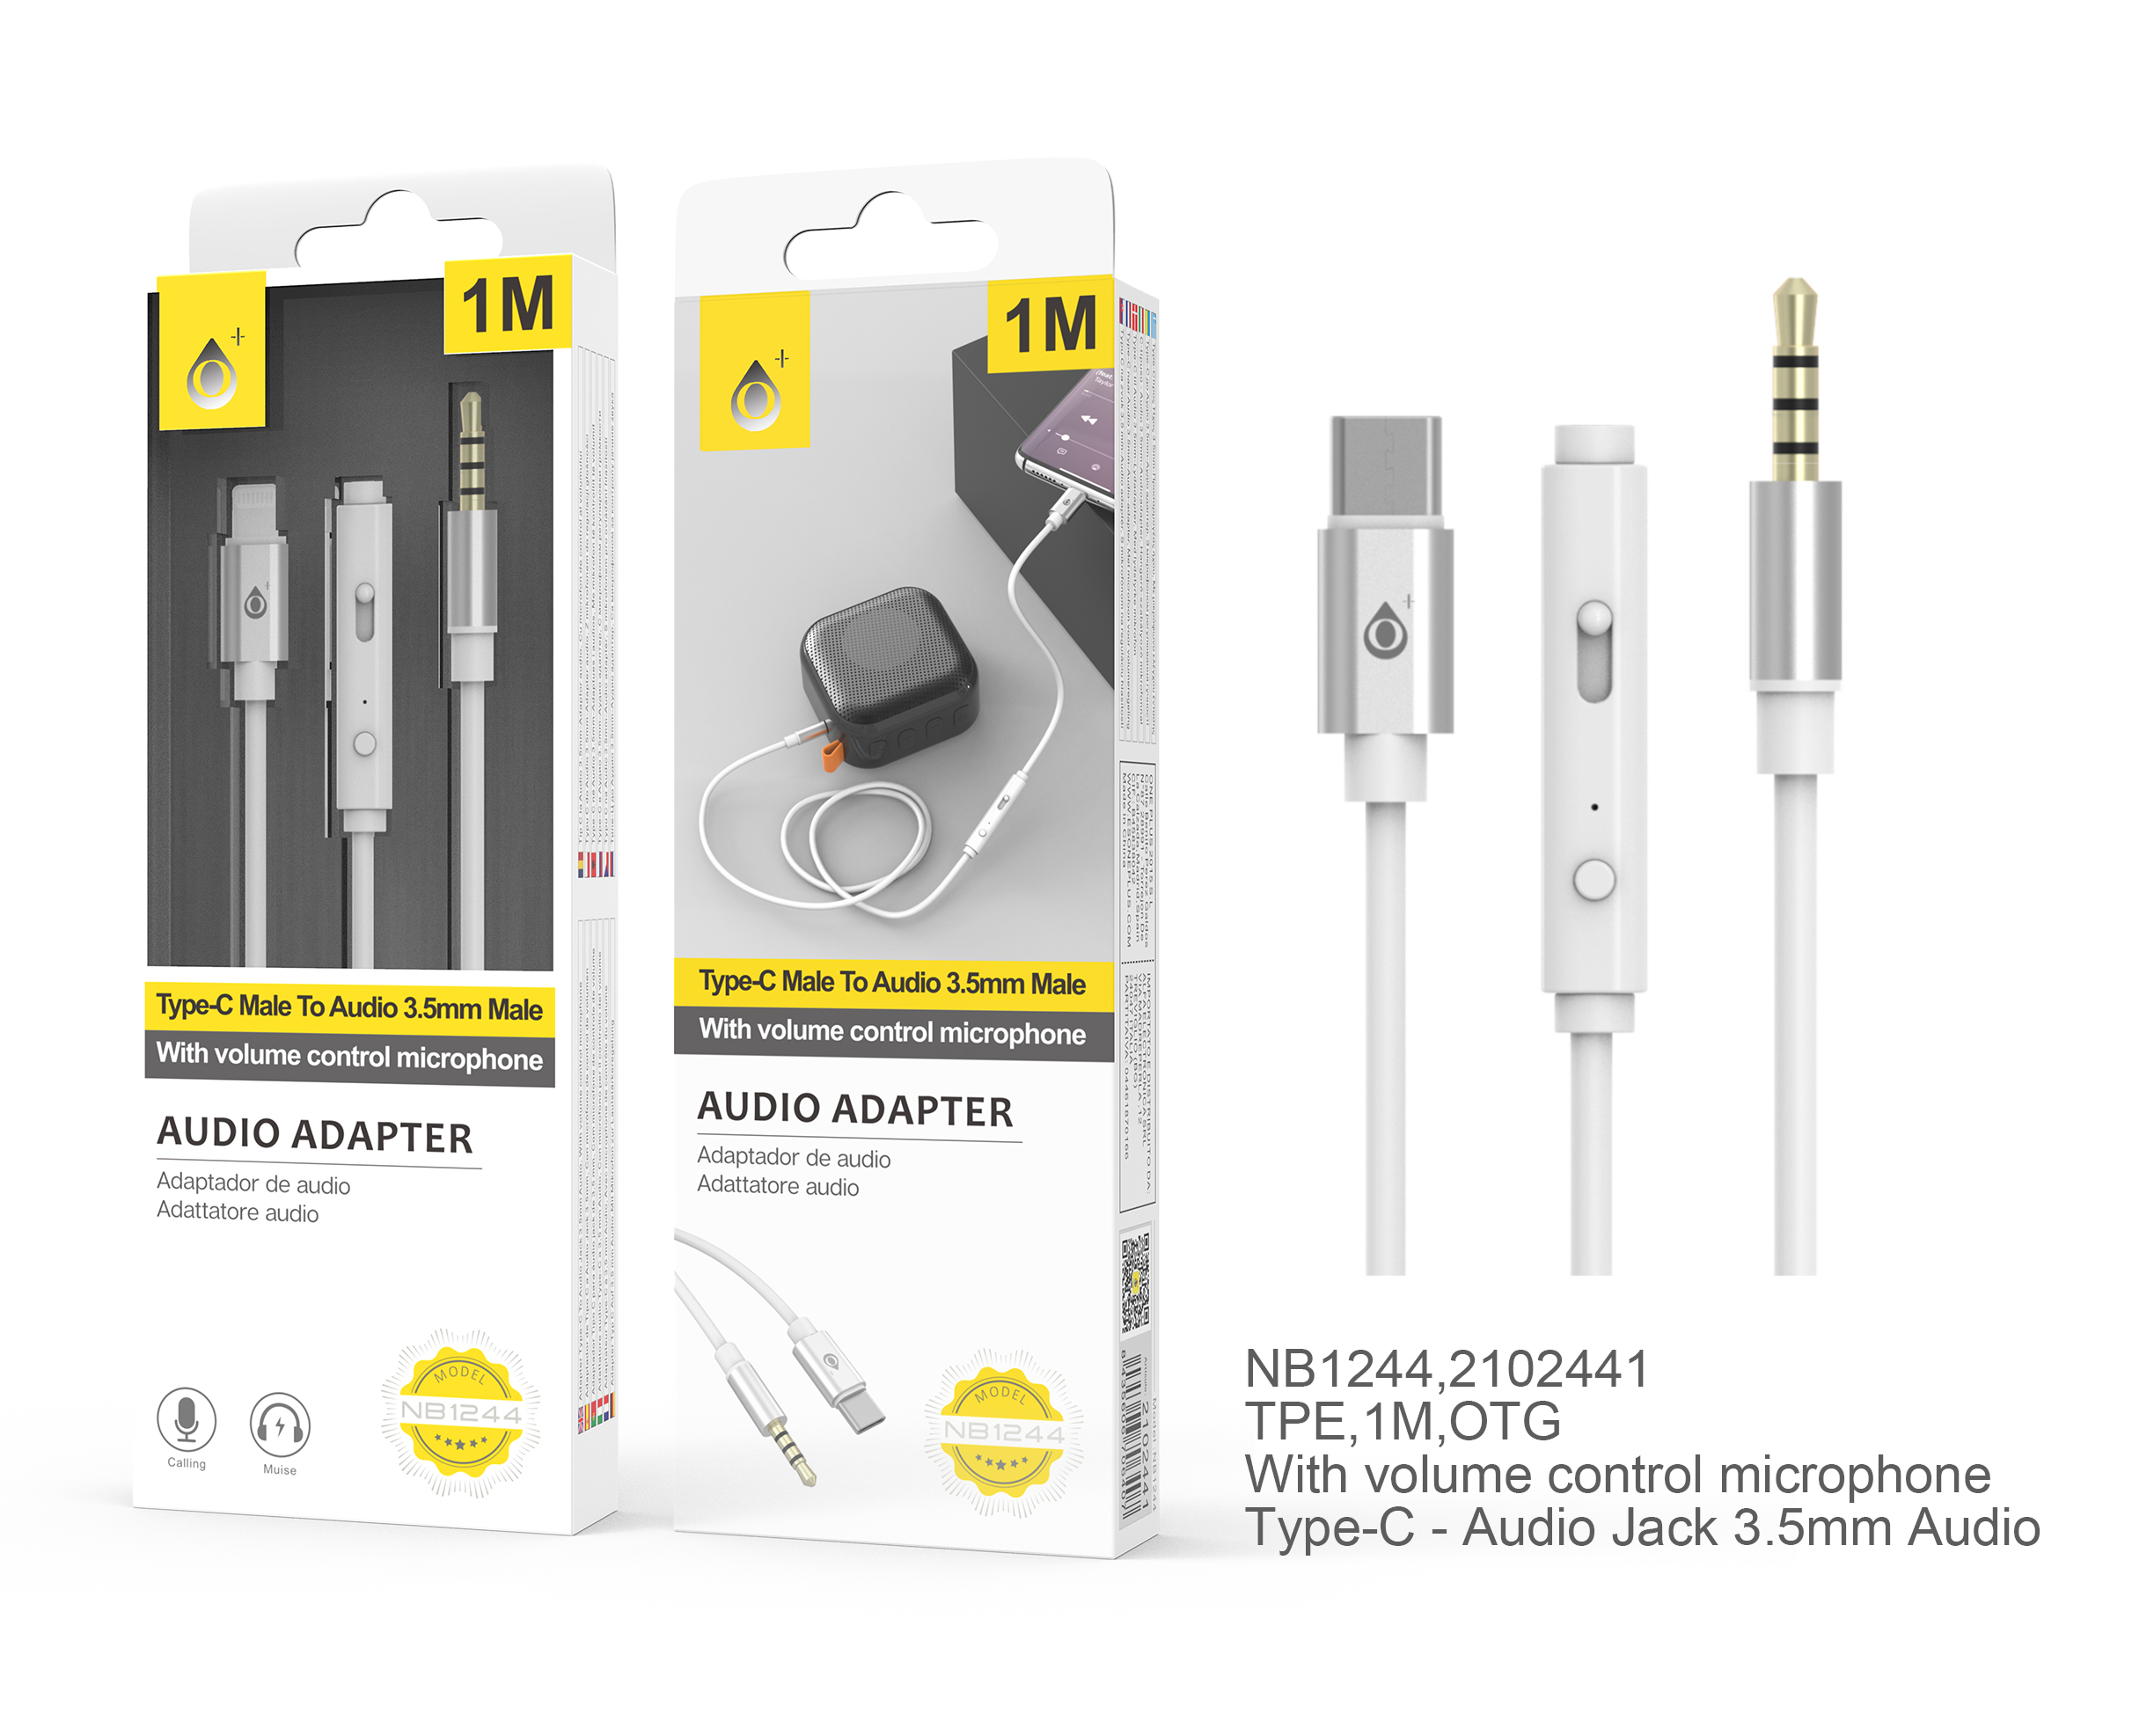 BL NB1244 Cable Adaptador Audio Type C a 3,5mm Audio, M-M, con Microfono, Control de volumen y Boton multifuncion, 1M, Blanco